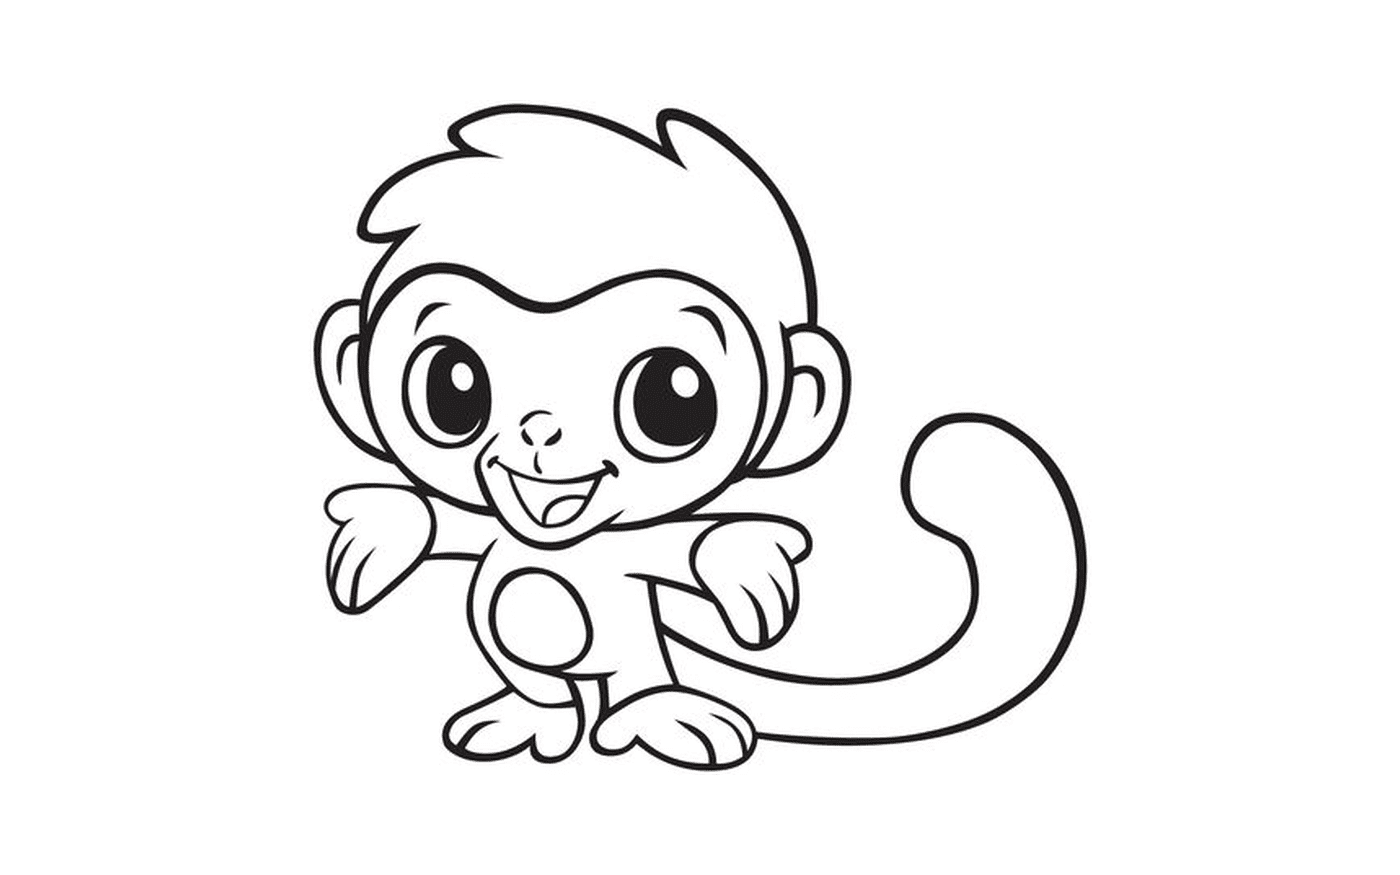  一只可爱的猴子 